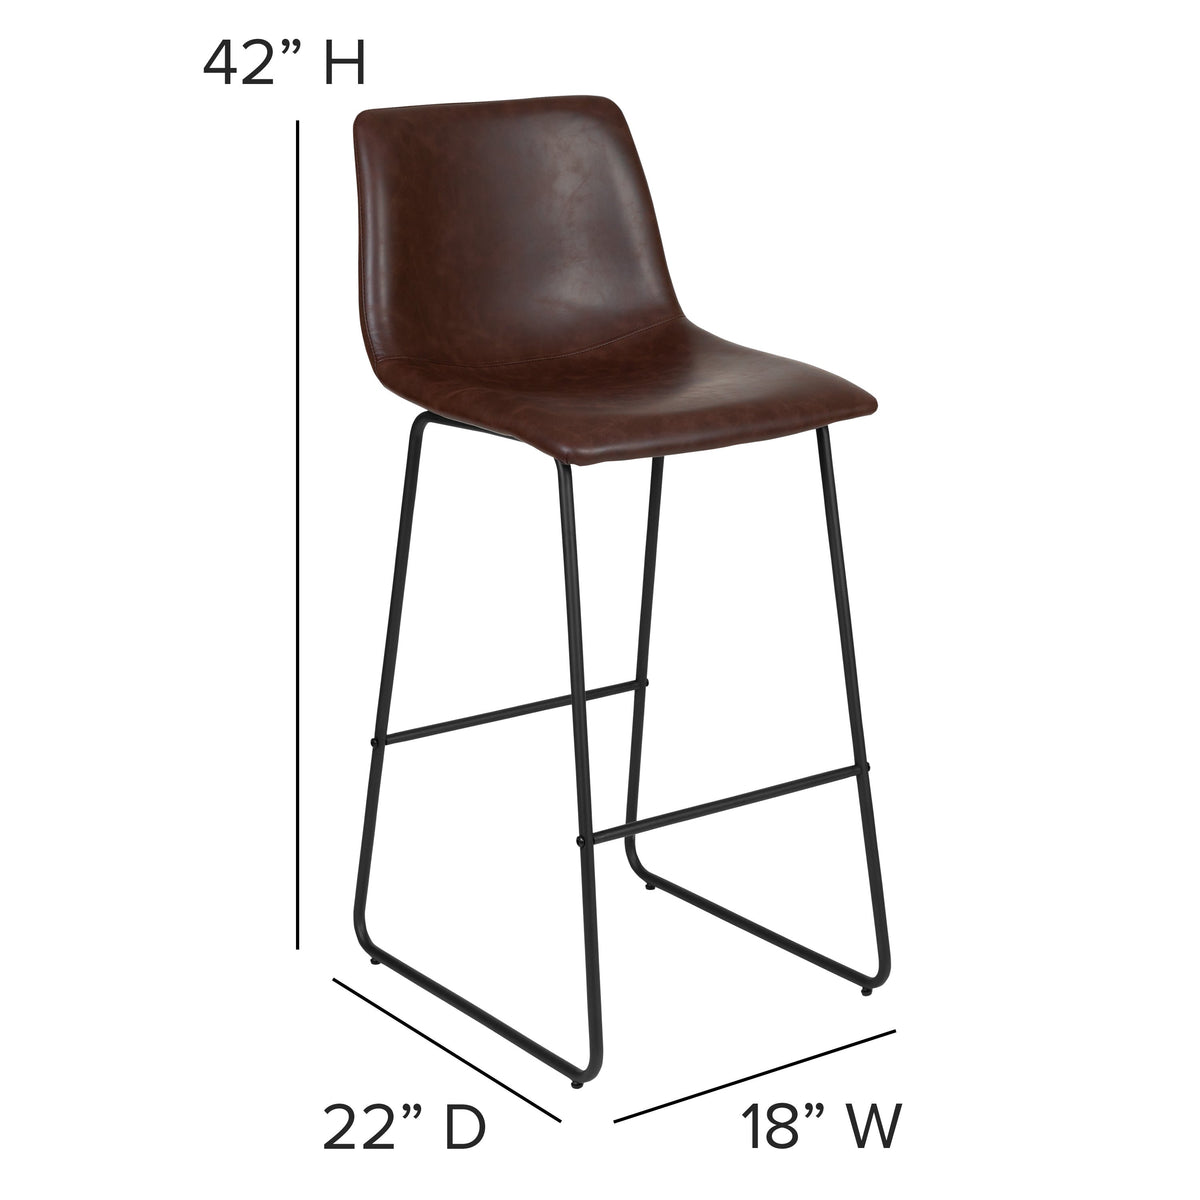 Dark Brown |#| Set of 2 Kitchen Bar Height Stool - 30 Inch Dark Brown LeatherSoft Barstool